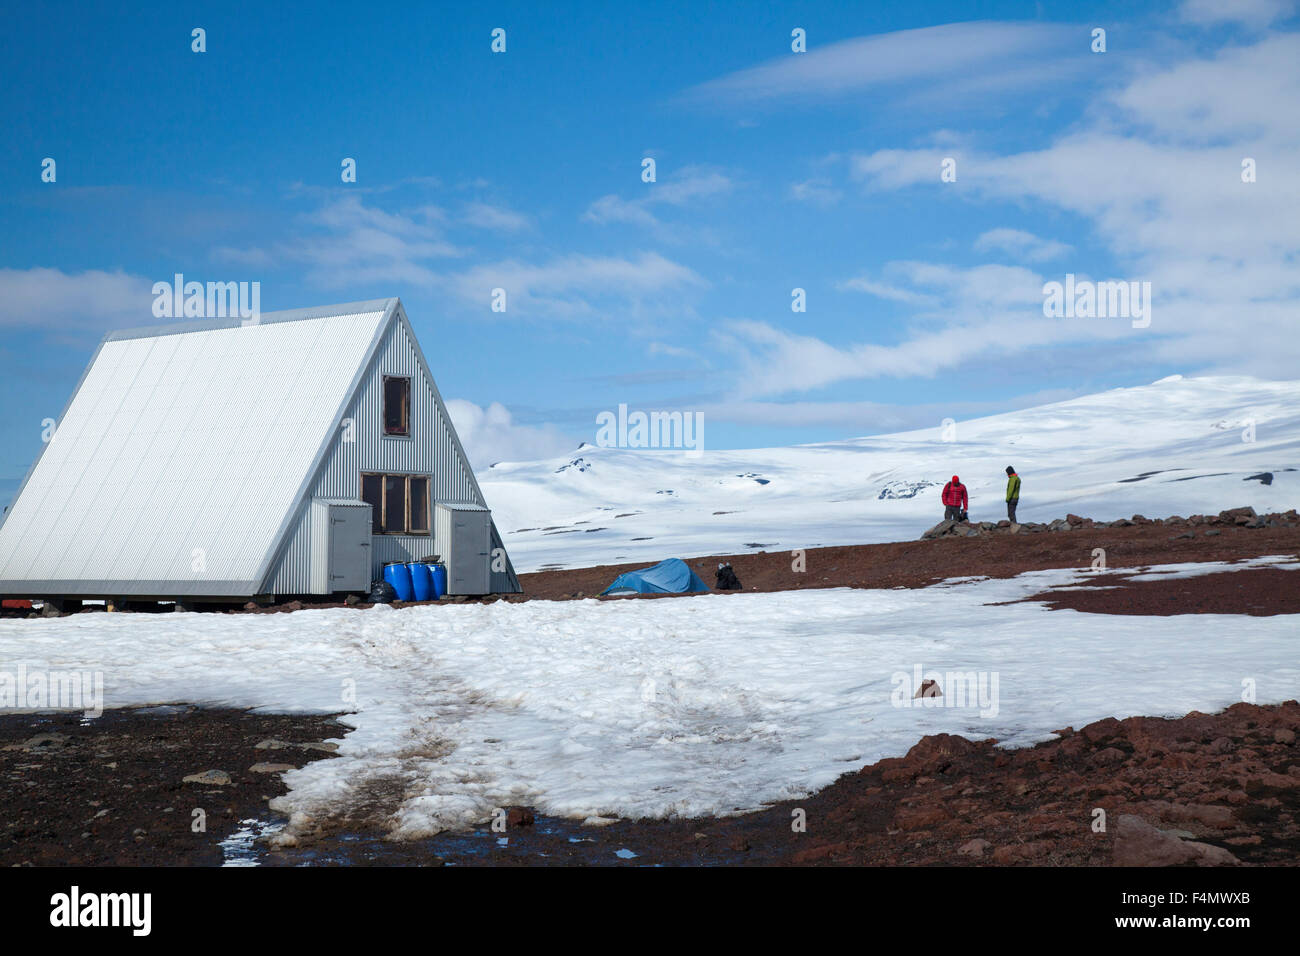 Le nouveau Baldvinsskali refuge de montagne sur le sentier, Fimmvorduhals Sudhurland, Islande. Banque D'Images